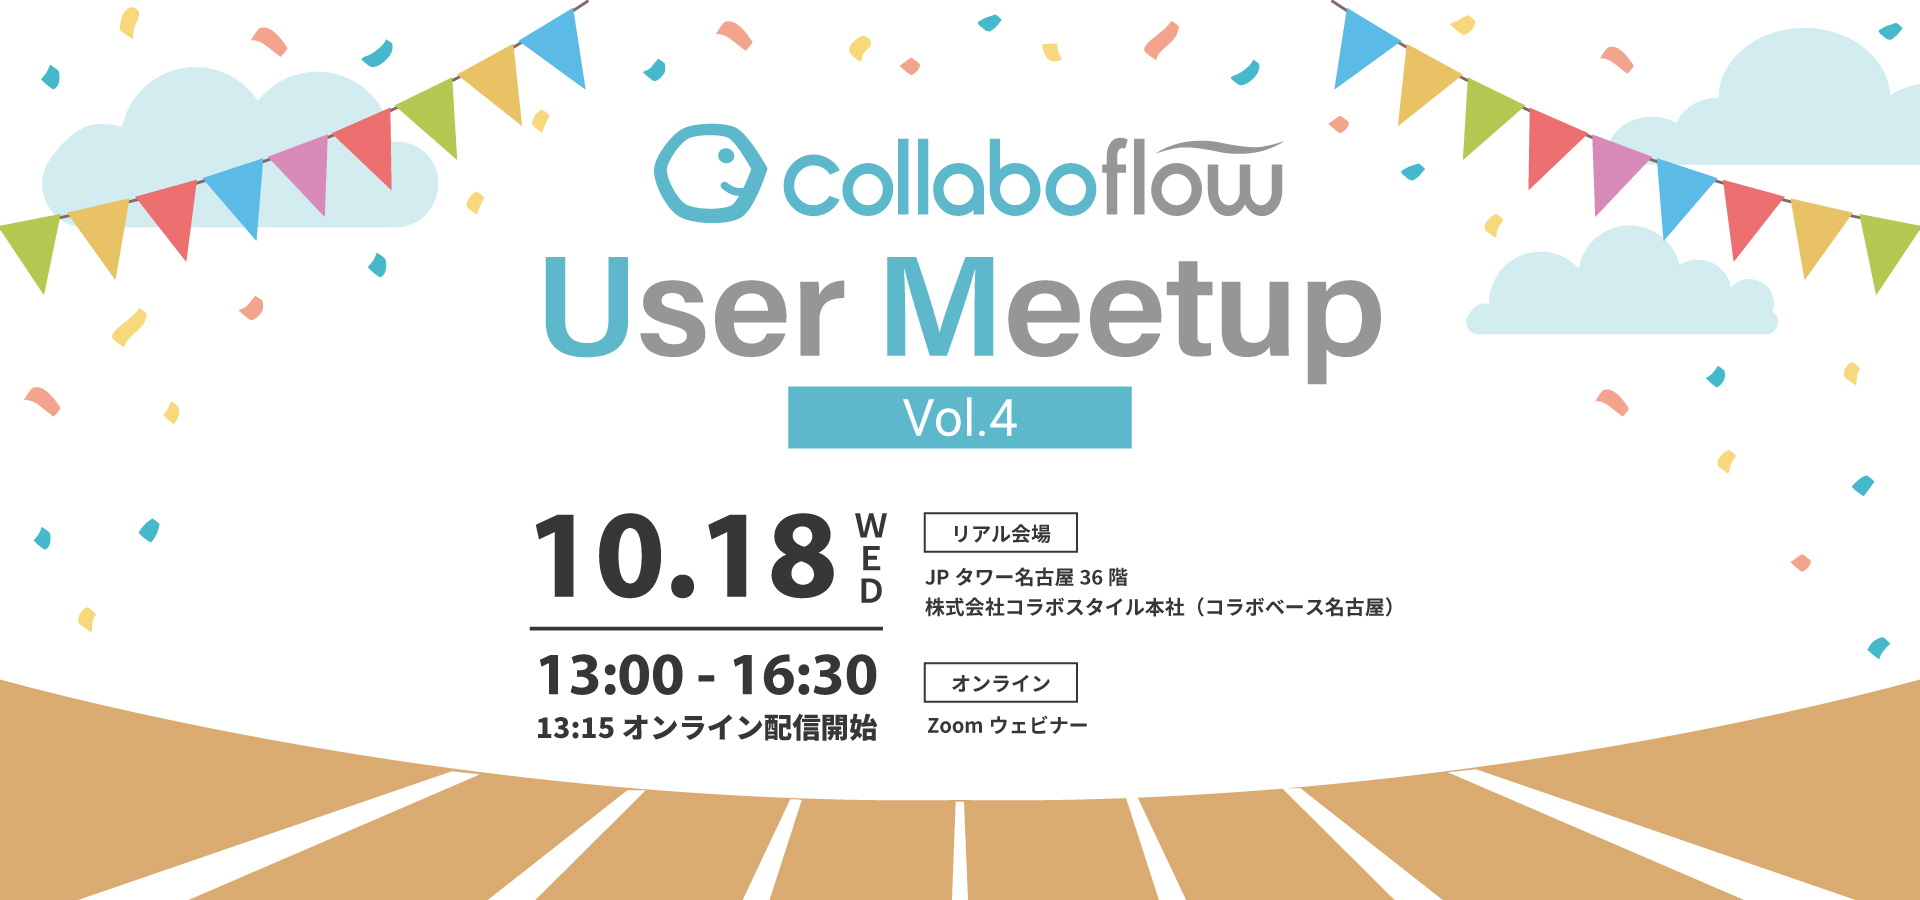 コラボフローユーザーイベント「Collaboflow User Meetup Vol.4」をオンライン＆リアル会場で開催します